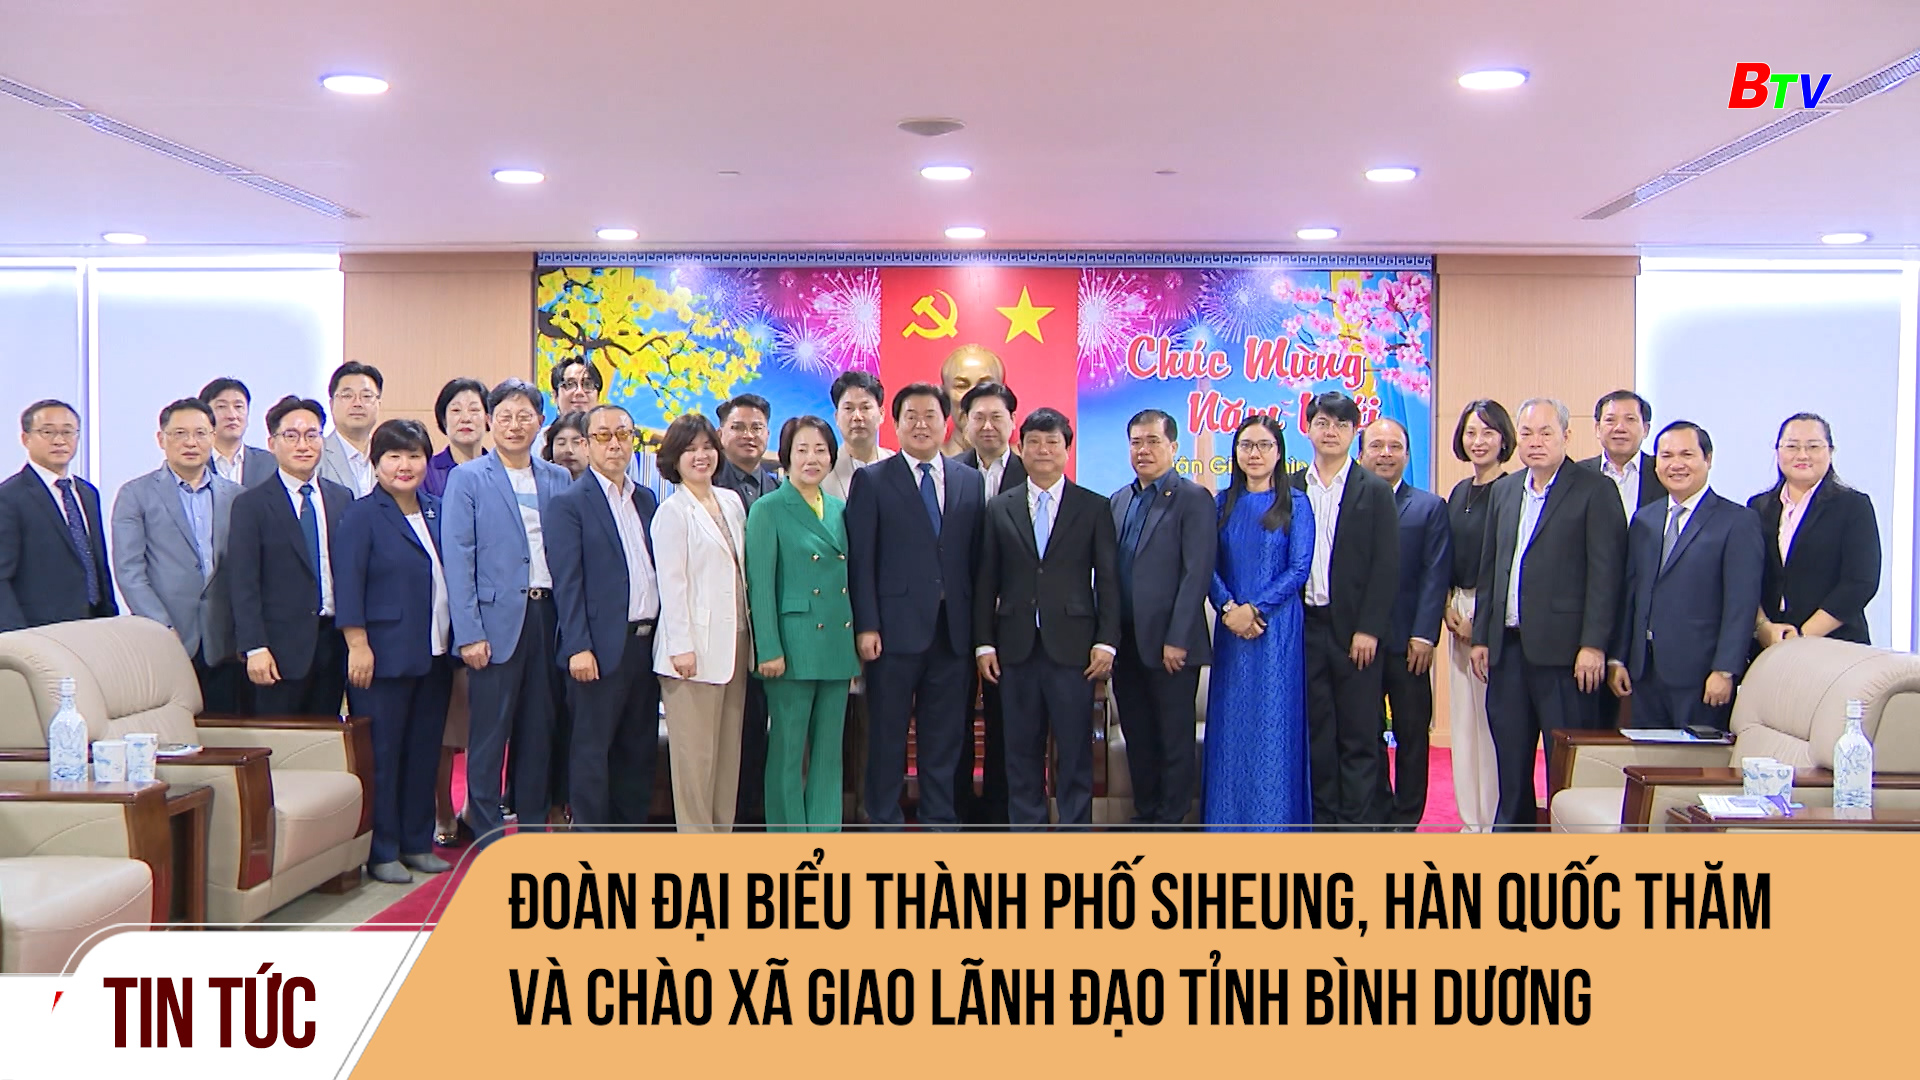 Đoàn đại biểu thành phố Siheung, Hàn Quốc thăm và chào xã giao lãnh đạo tỉnh Bình Dương